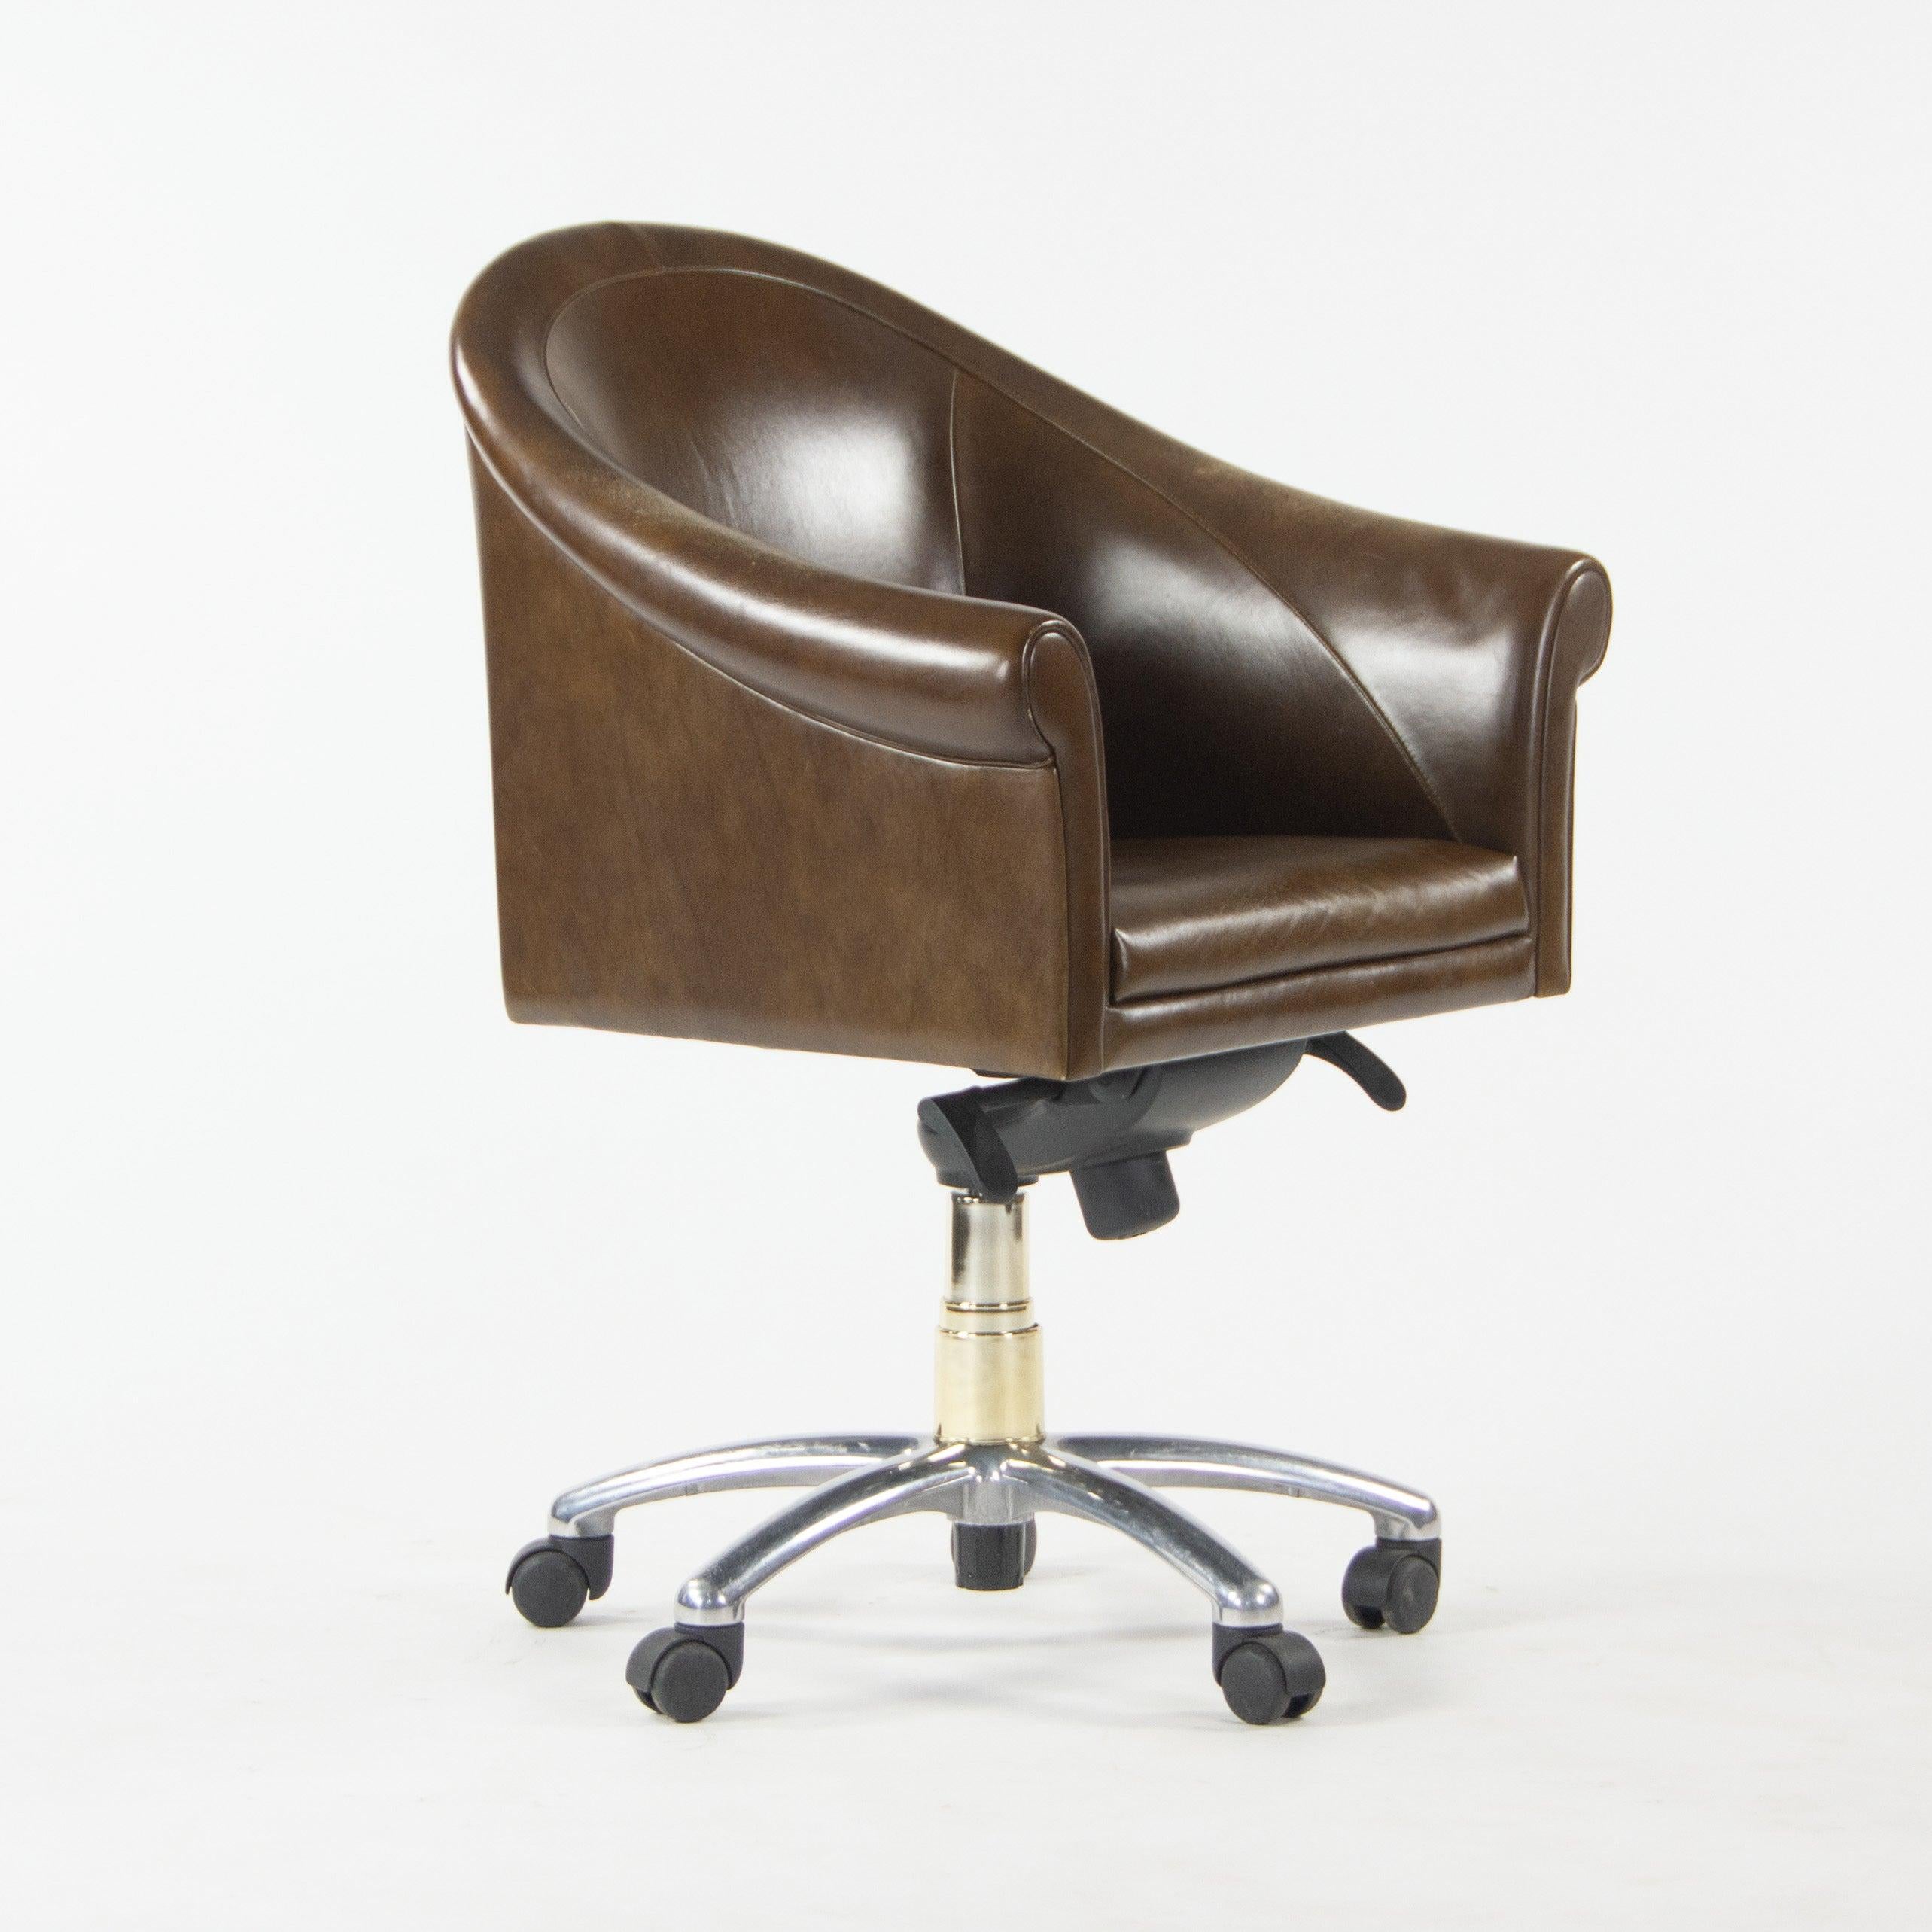 Zum Verkauf angeboten wird ein Satz (separat erhältlich) Poltrona Frau Büro-/Schreibtischstuhl auf Rollen. Sie ist Teil der Sinan Collection von Poltrona Frau, entworfen von Luca Scacchetti. 
Dieses Exemplar ist mit braunem Leder ausgestattet. Die